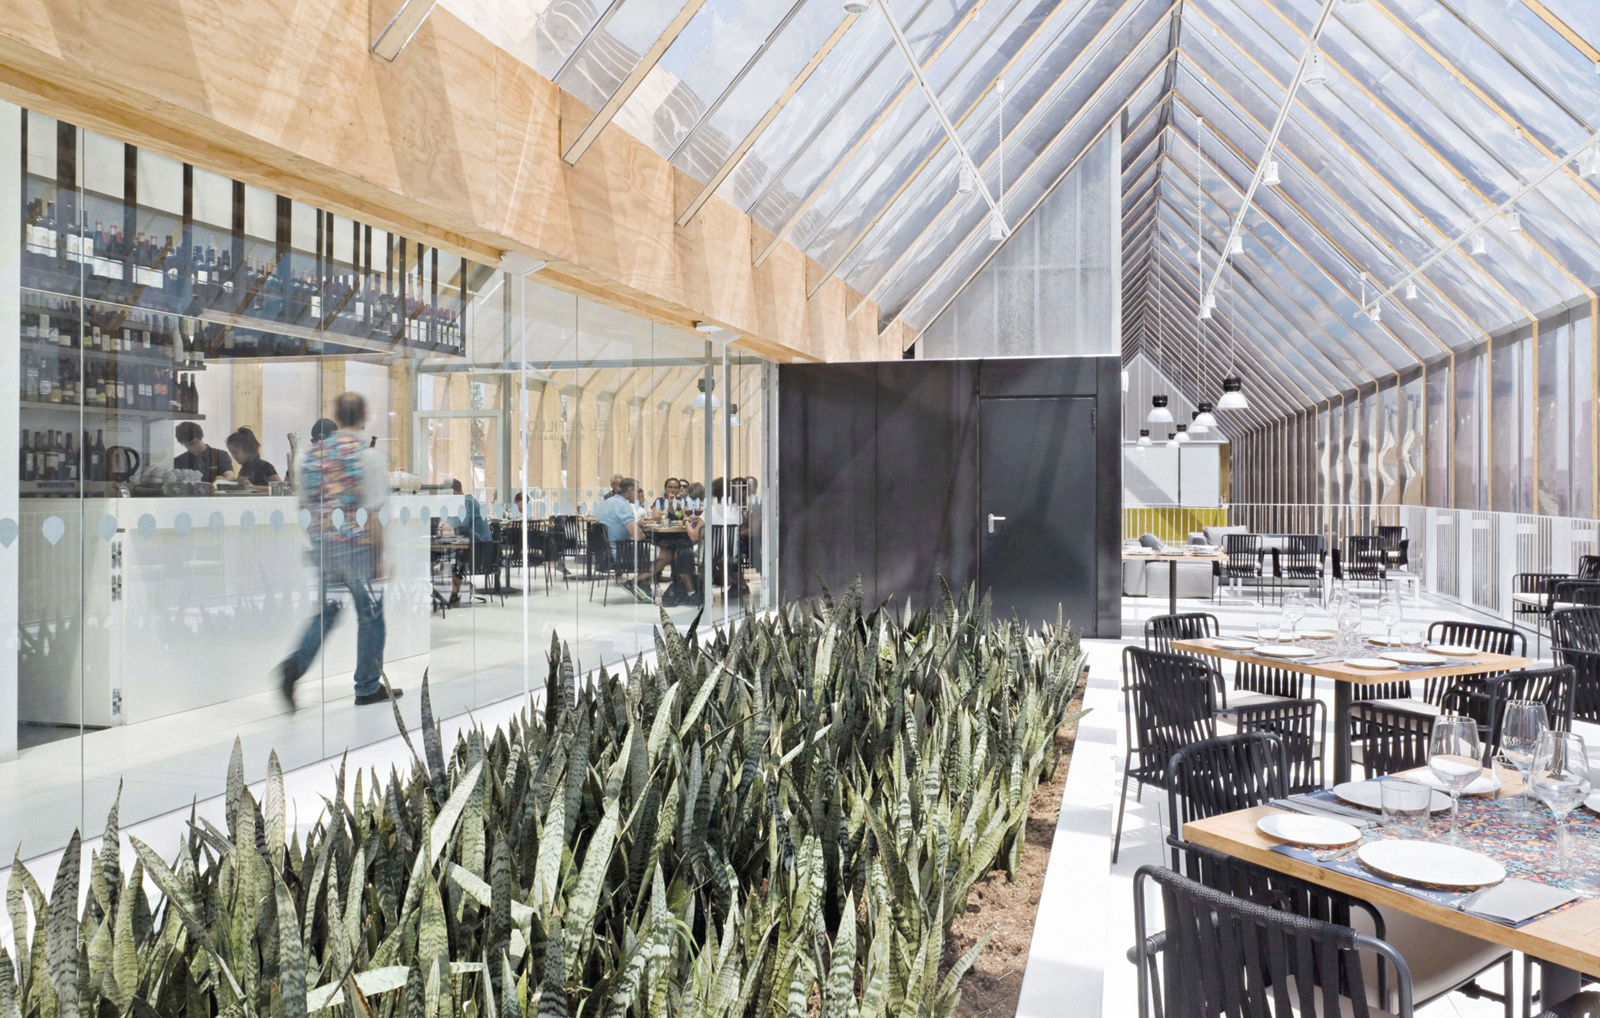 projekte - outdoor projekte - begebenheit - spanish pavilion – expo milan 2015